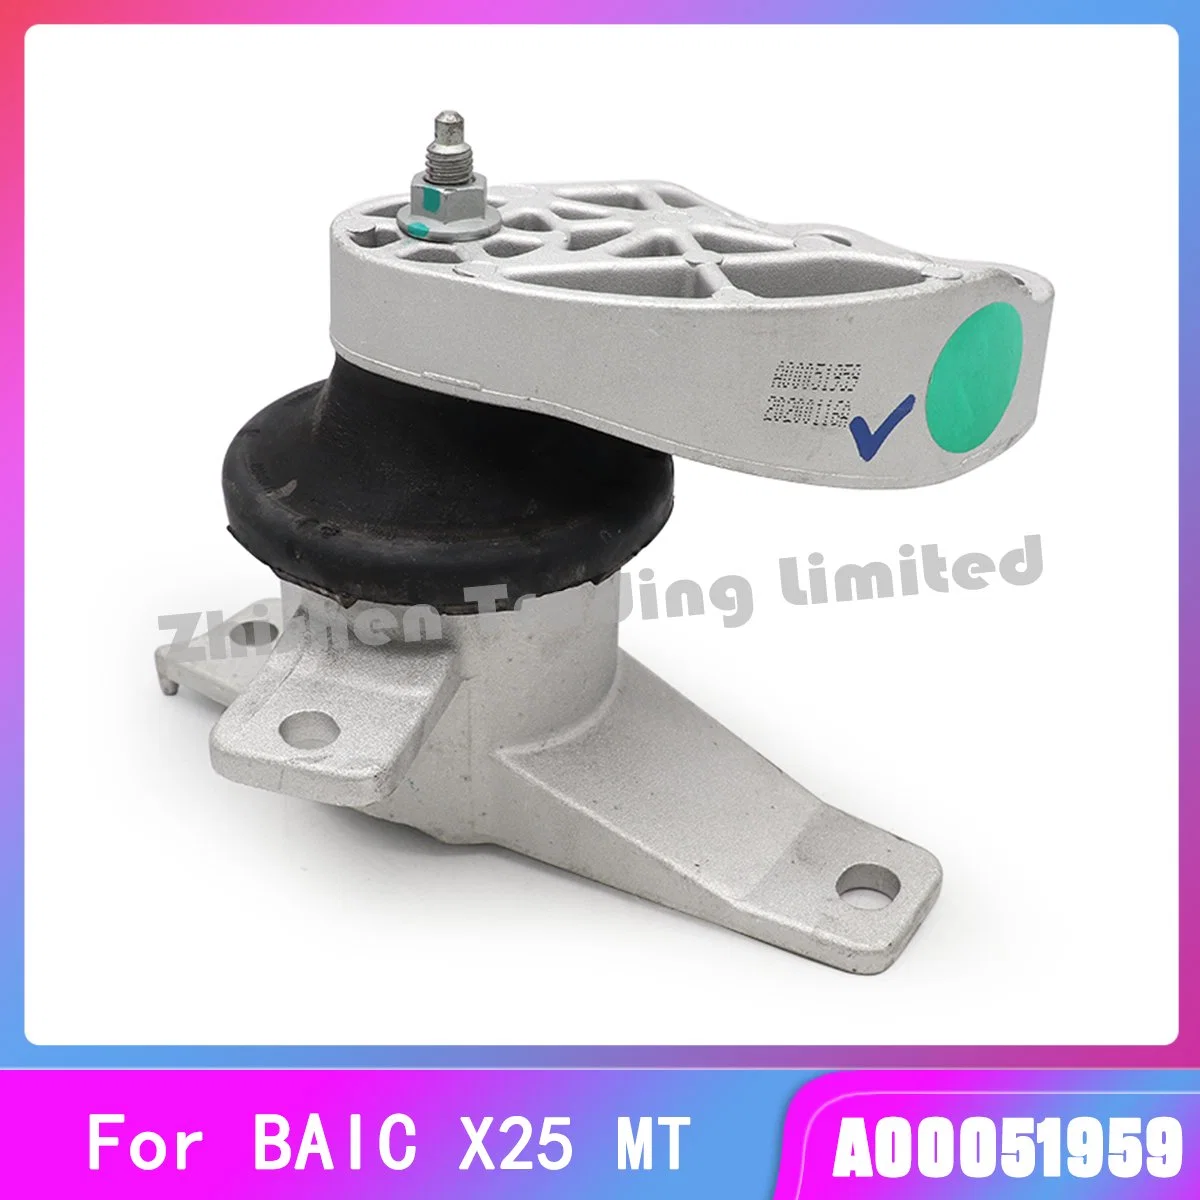 Pièce de rechange pour voiture Baic Accessoire pour Shenbao X25 au moteur Mt Support de suspension gauche droit Patte de verrouillage de support de patte de suspension manuelle automatique.